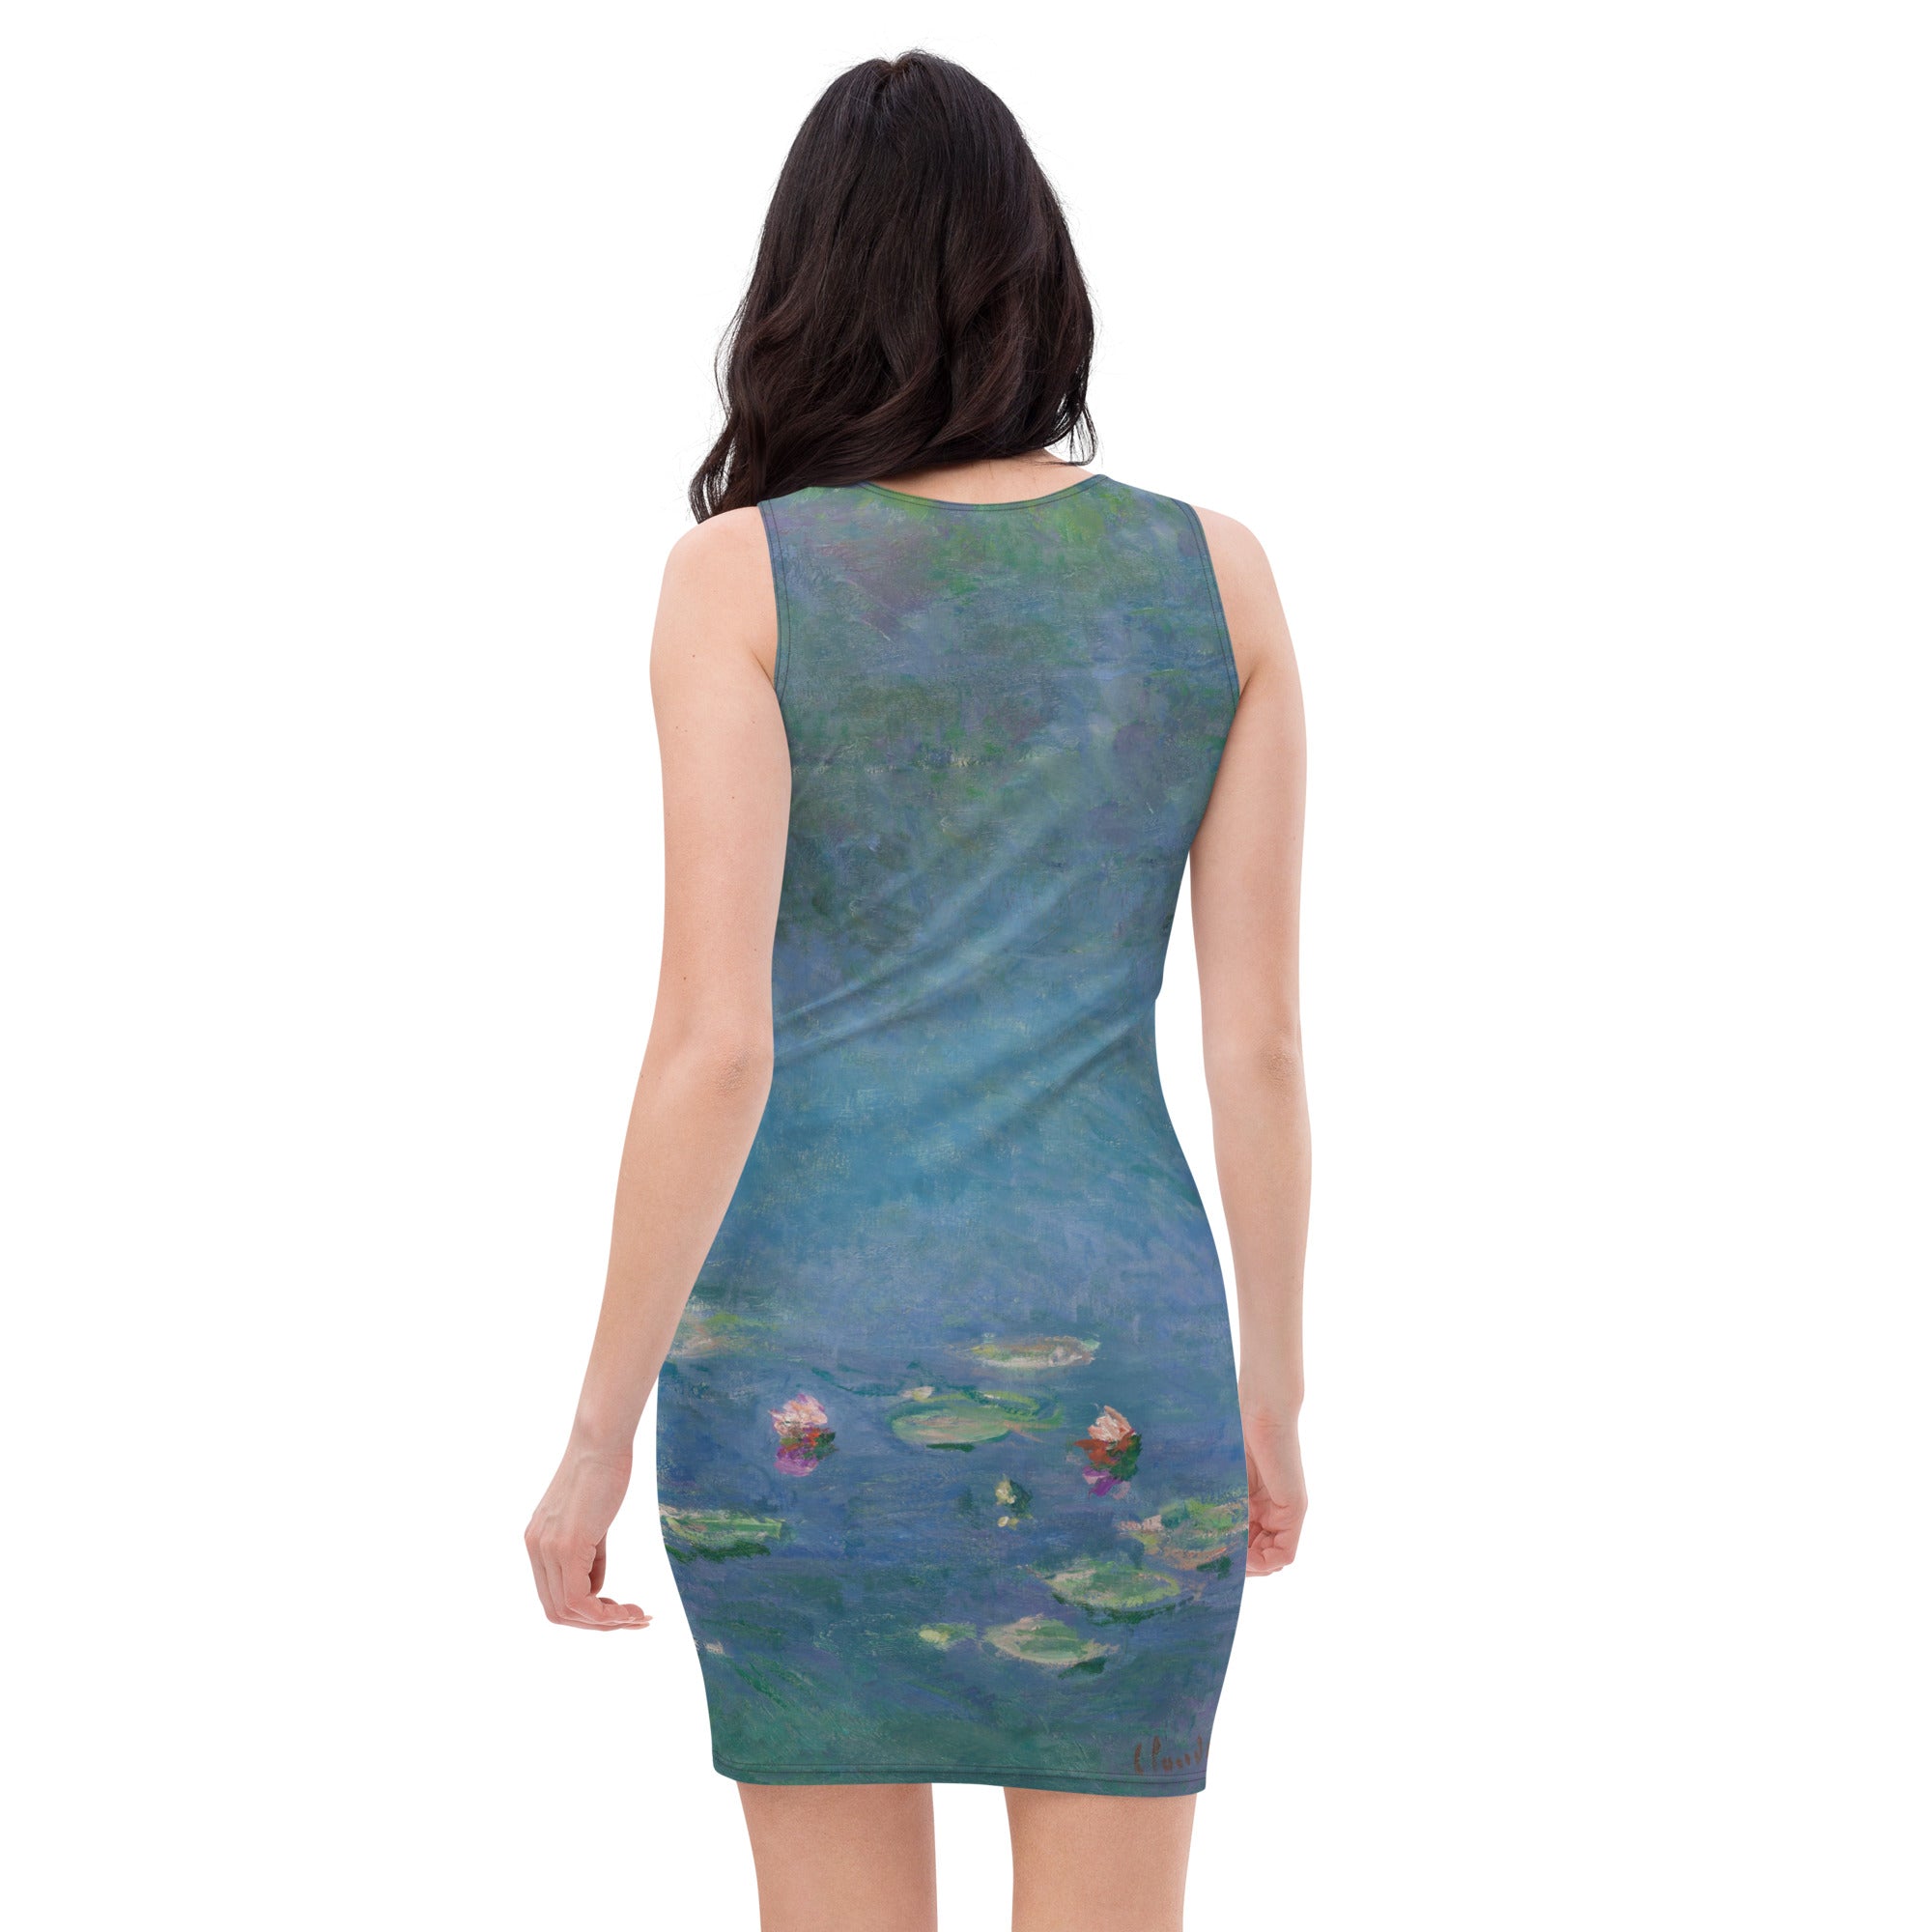 Claude Monet 'Water Lilies' Famous Painting Bodycon Dress | Premium Art Dress